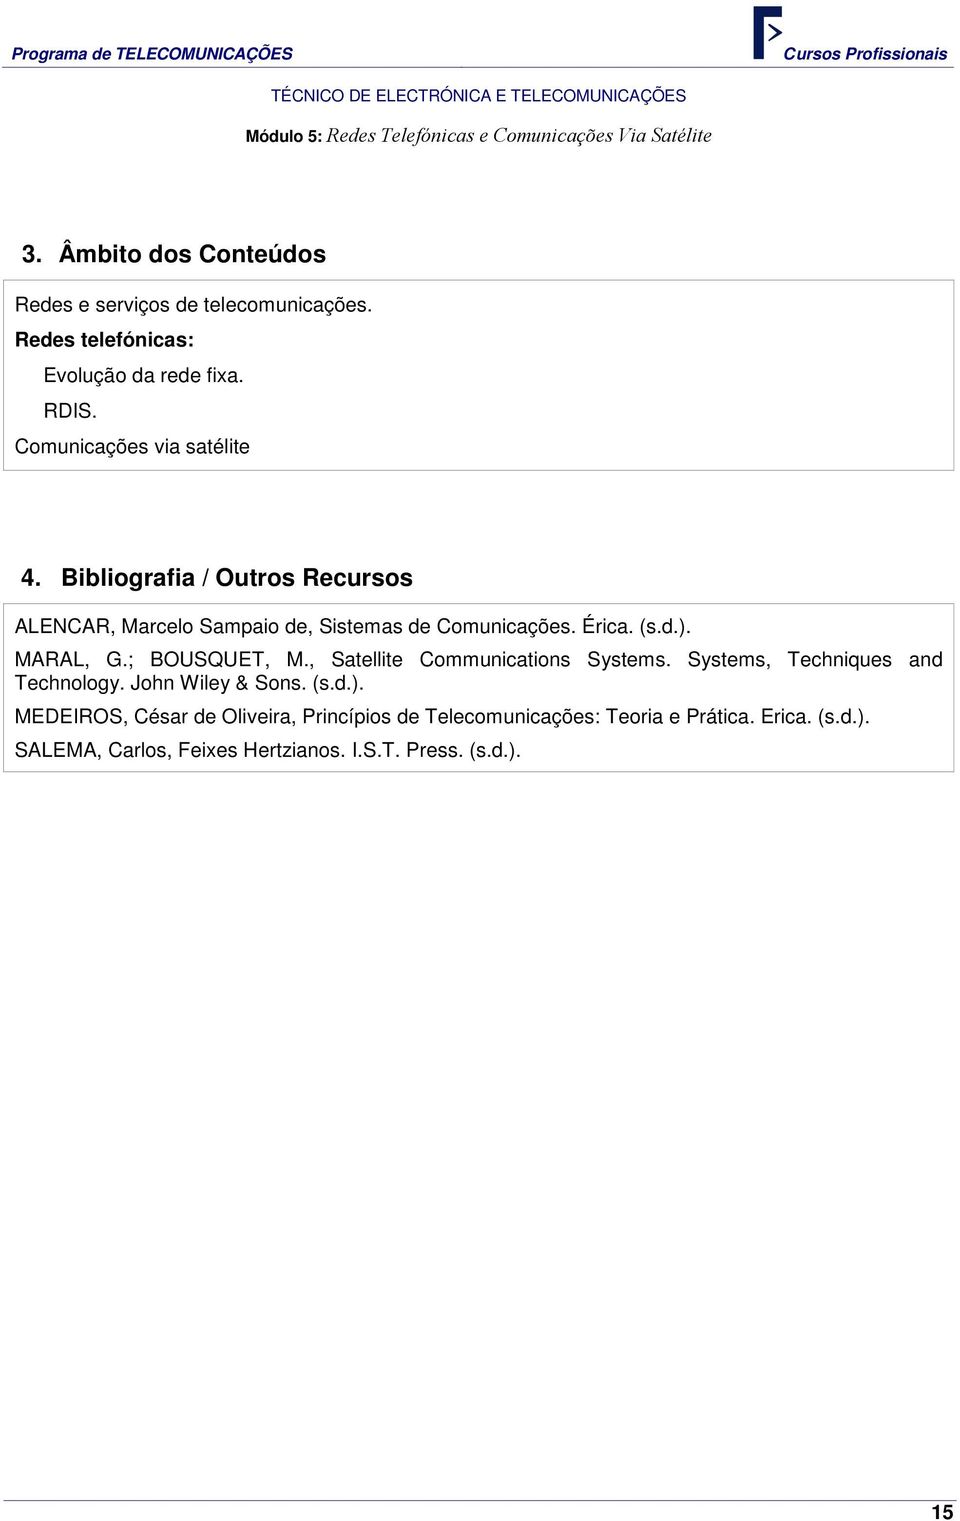 Bibliografia / Outros Recursos ALENCAR, Marcelo Sampaio de, Sistemas de Comunicações. Érica. (s.d.). MARAL, G.; BOUSQUET, M.